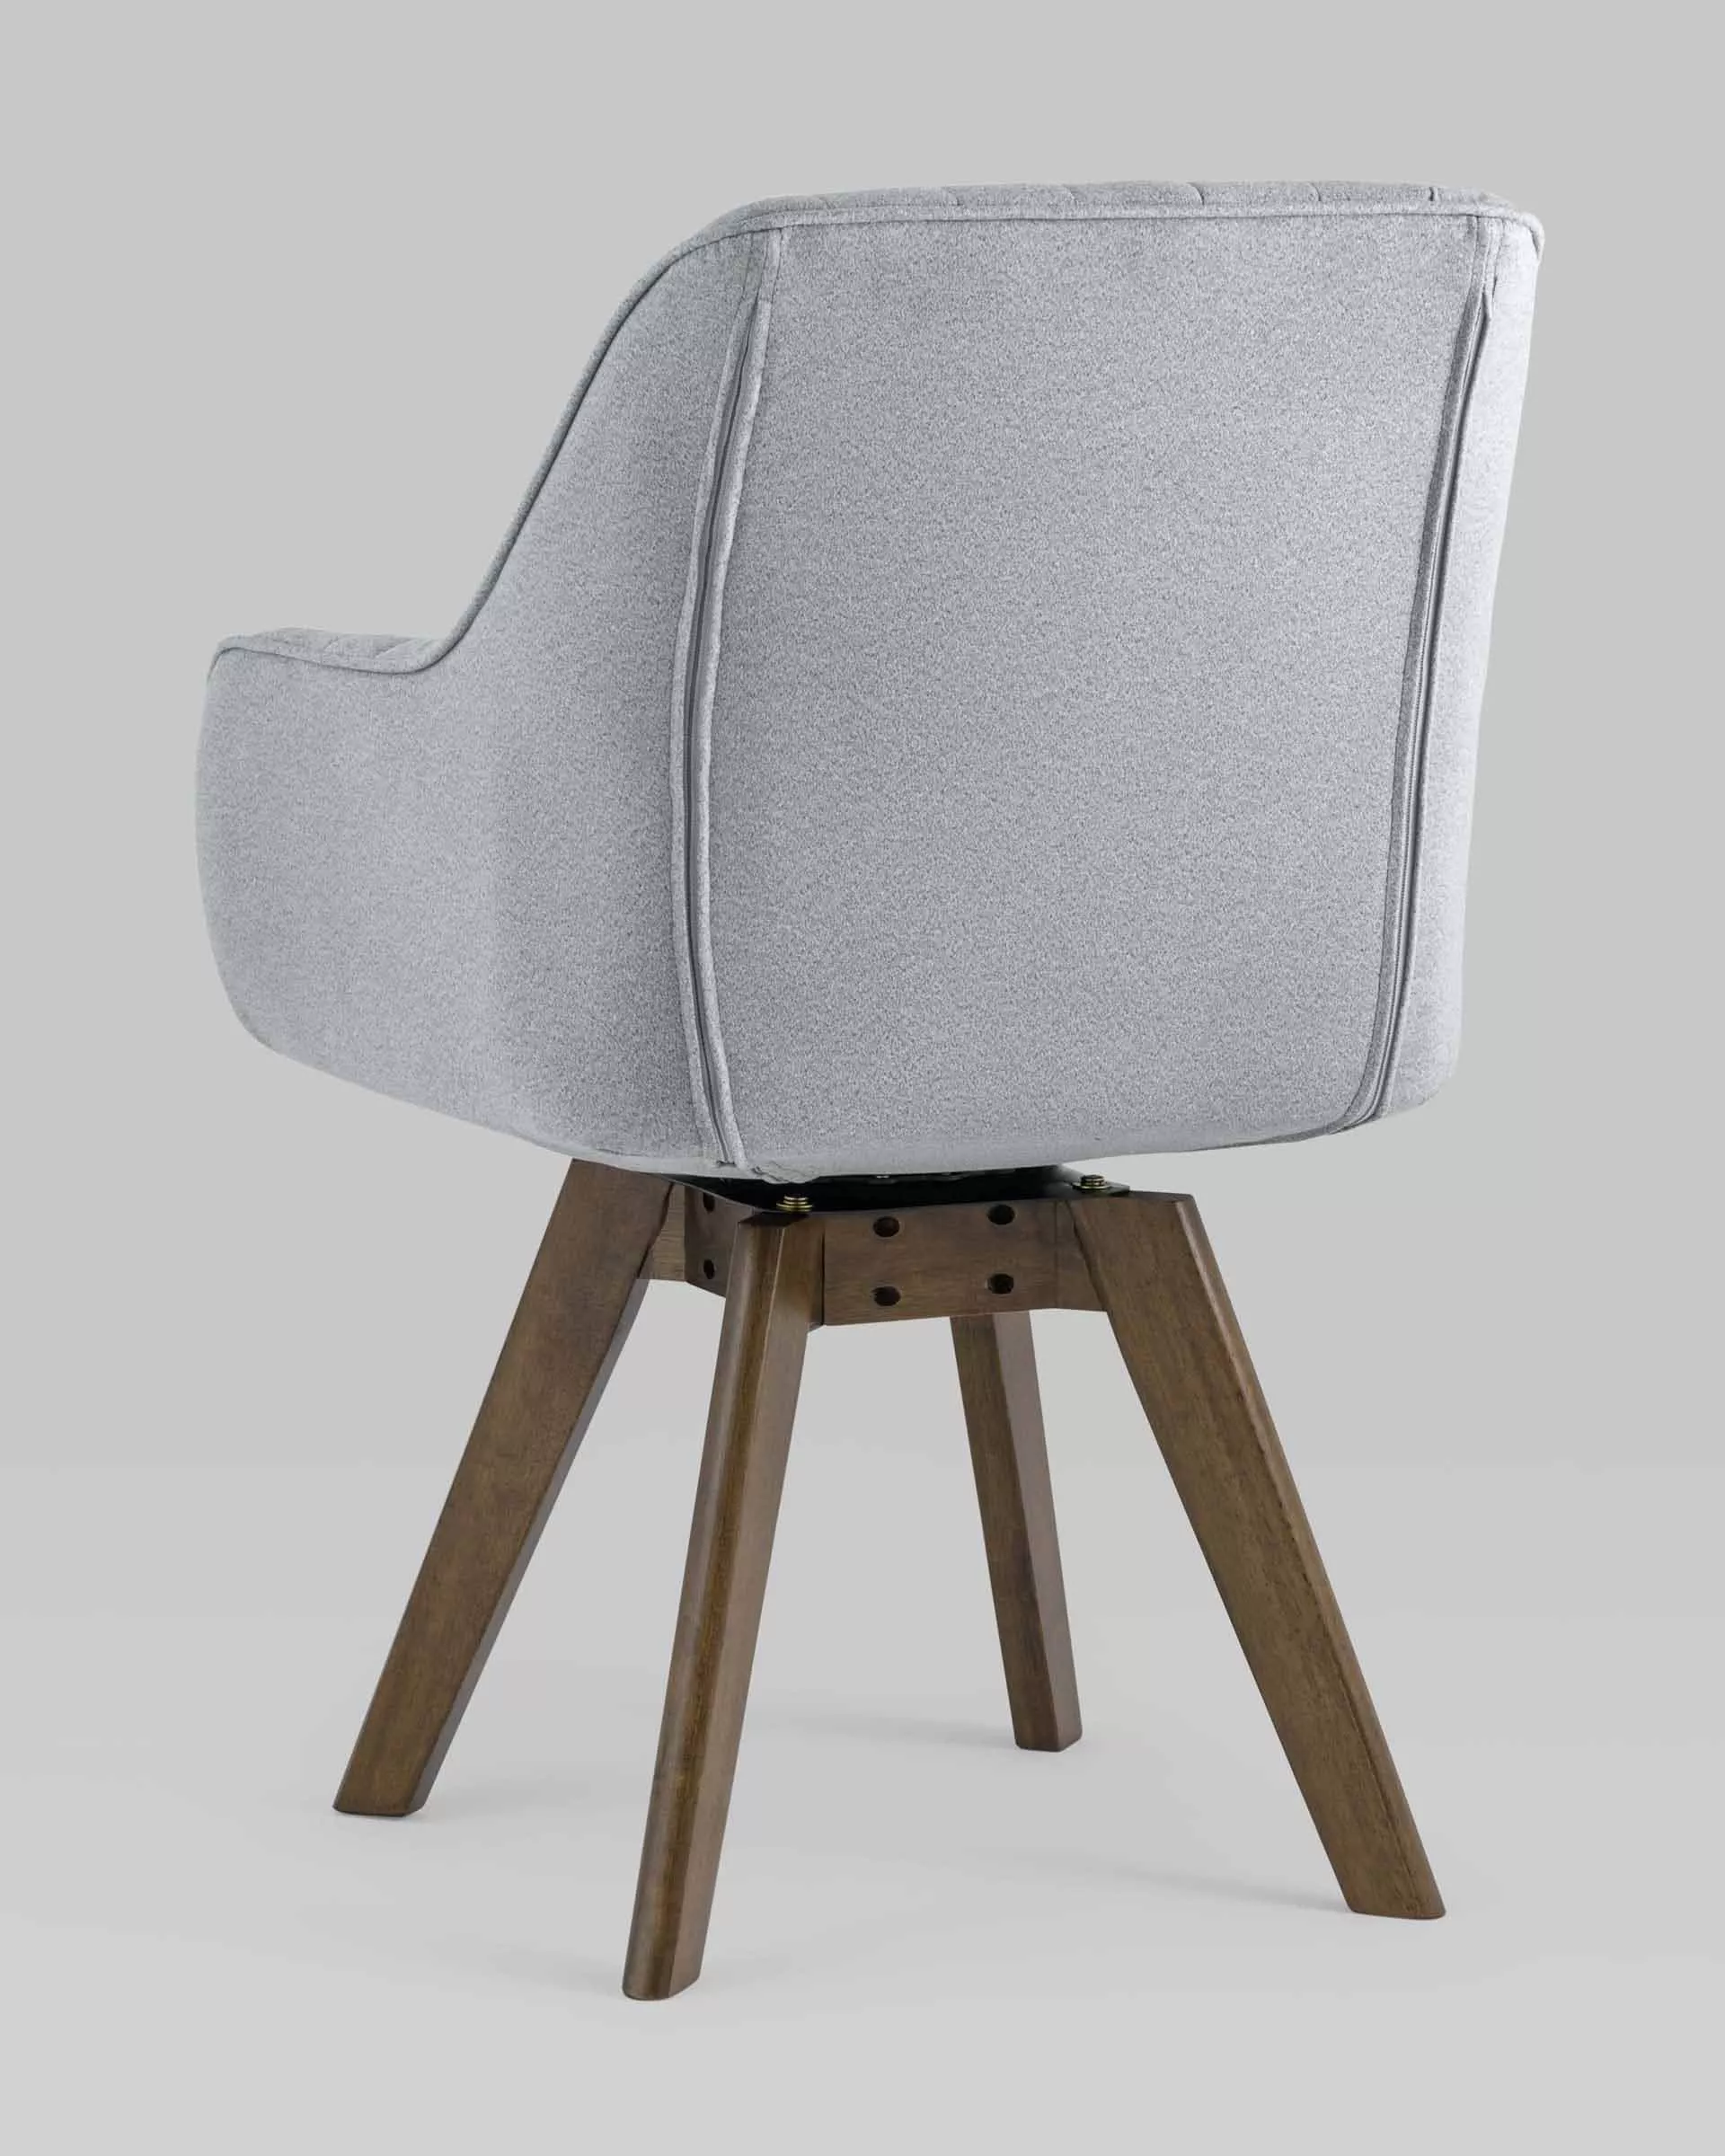 Комплект вращающихся стульев MANS серый